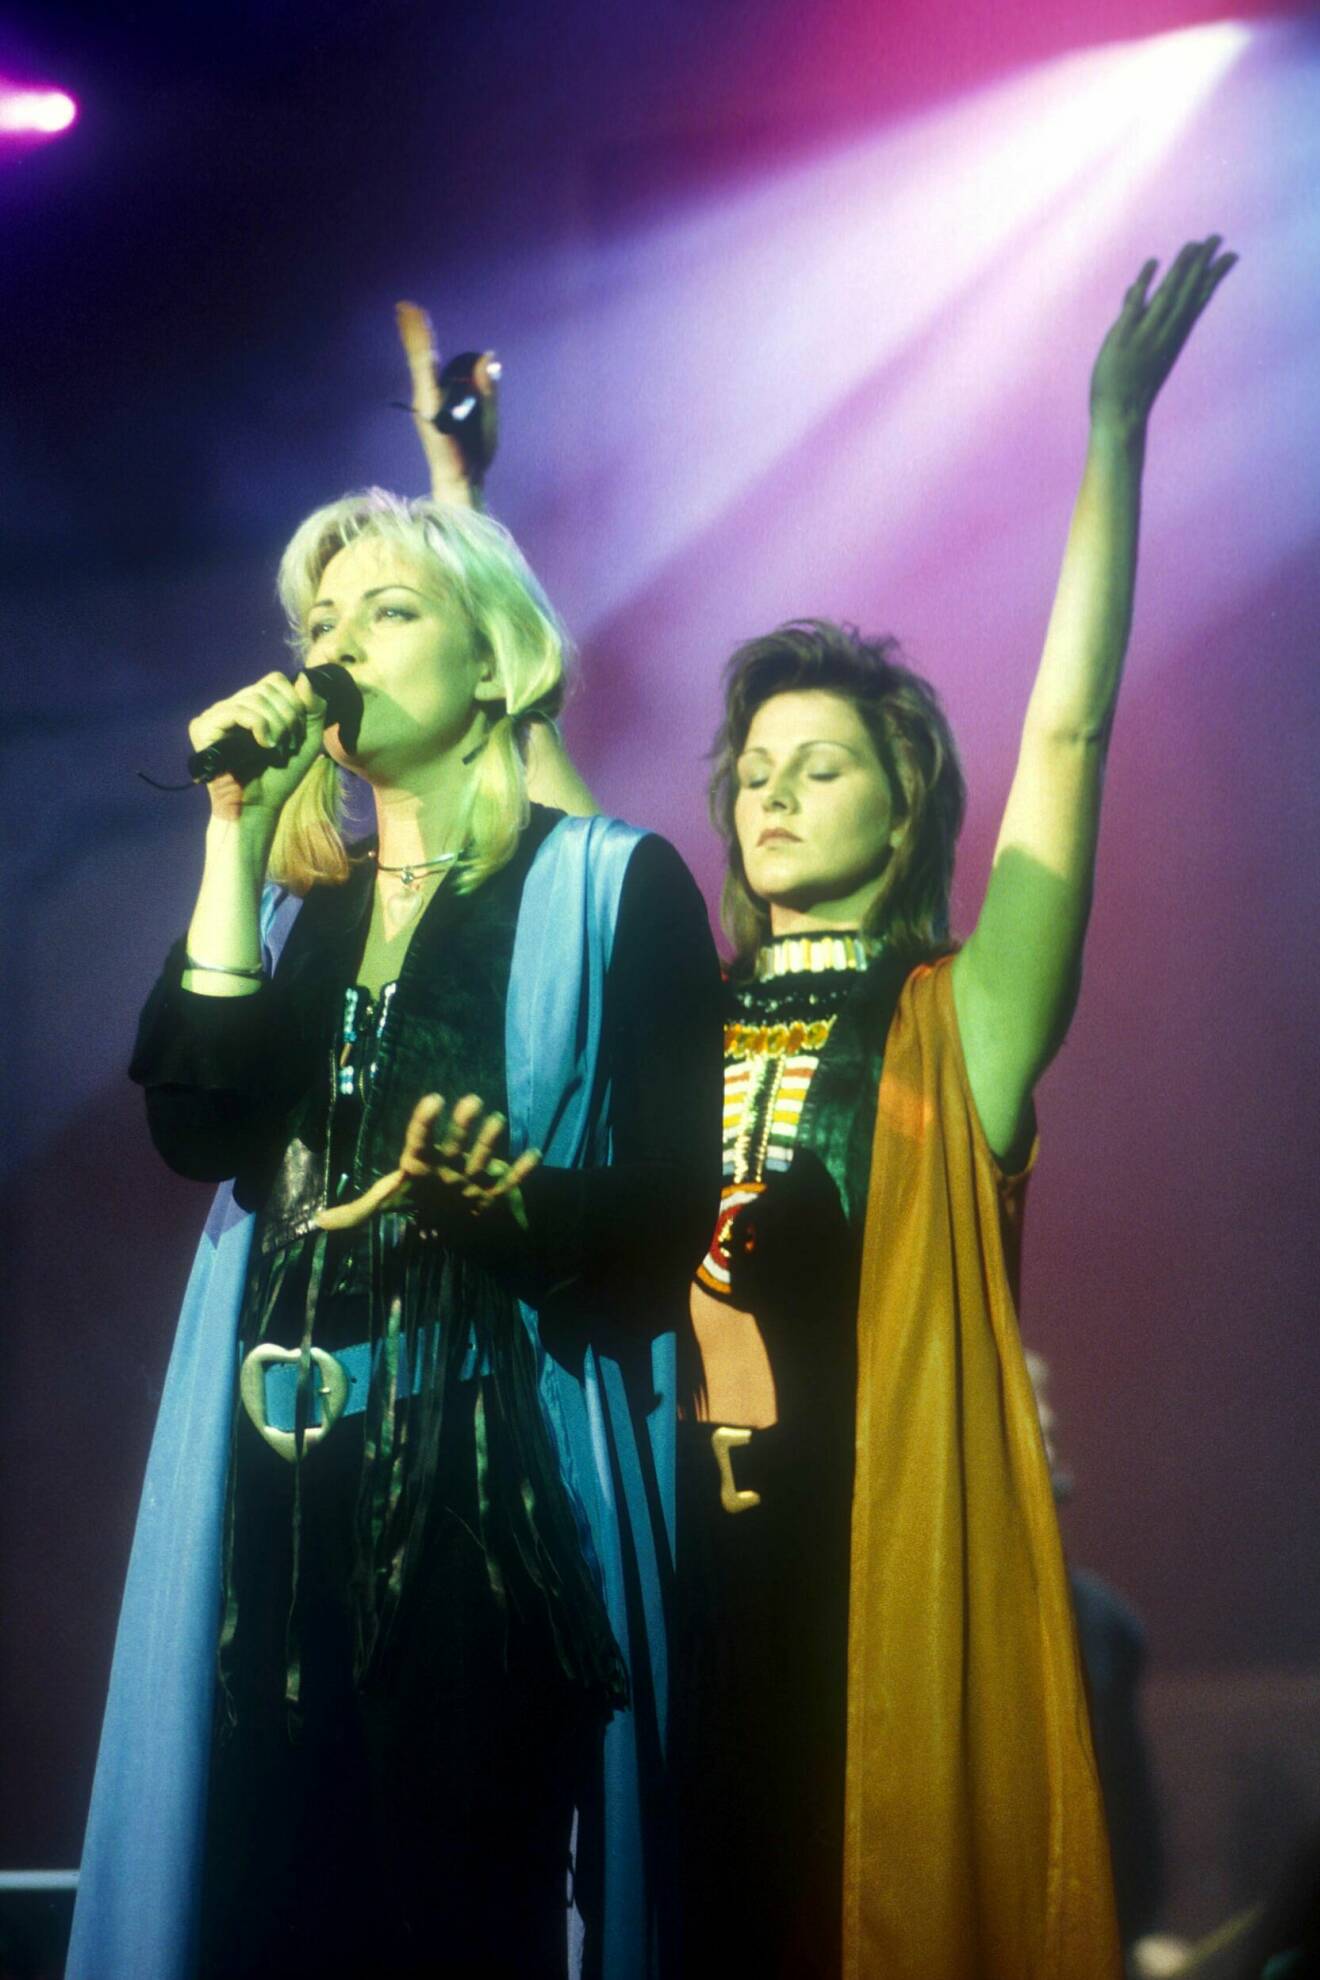 Systrarna Malin ”Linn” Berggren och Jenny Berggren fångade på bild under ett Ace of Base-uppträdande på Disneyland, Paris år 1993.